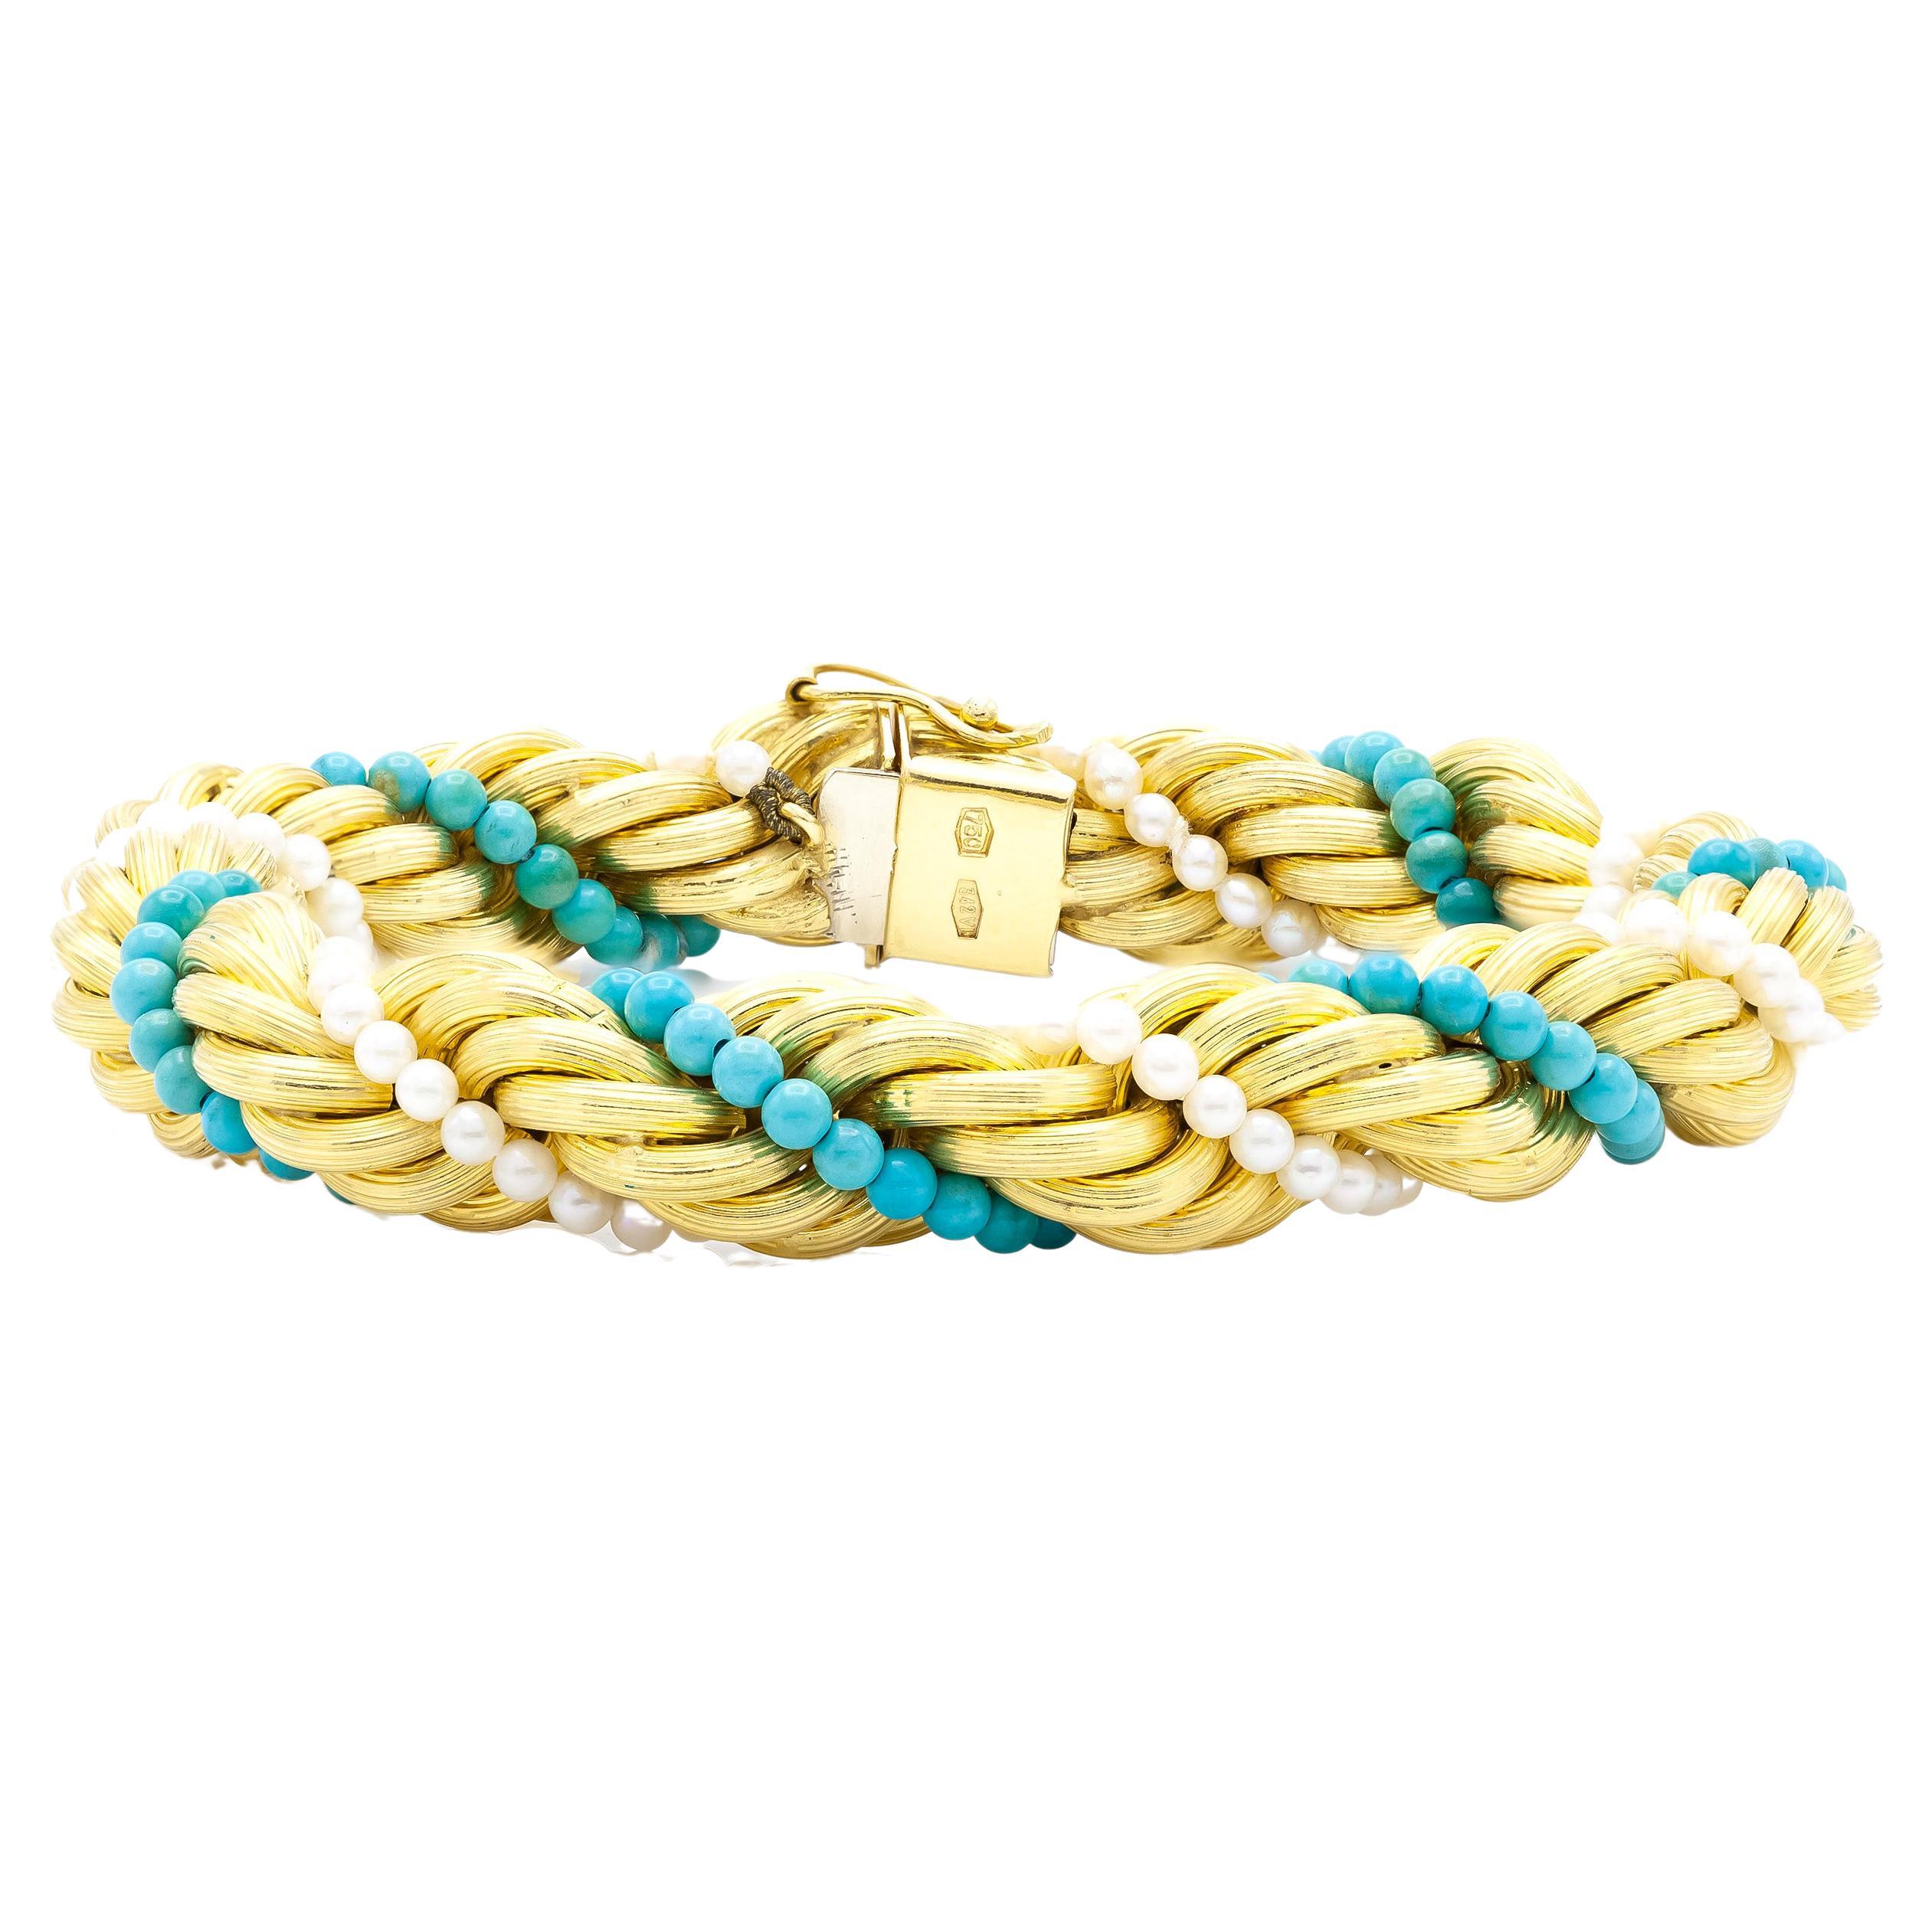 18 Karat Gold Seil-Kette Armband mit Türkisen und Perlen